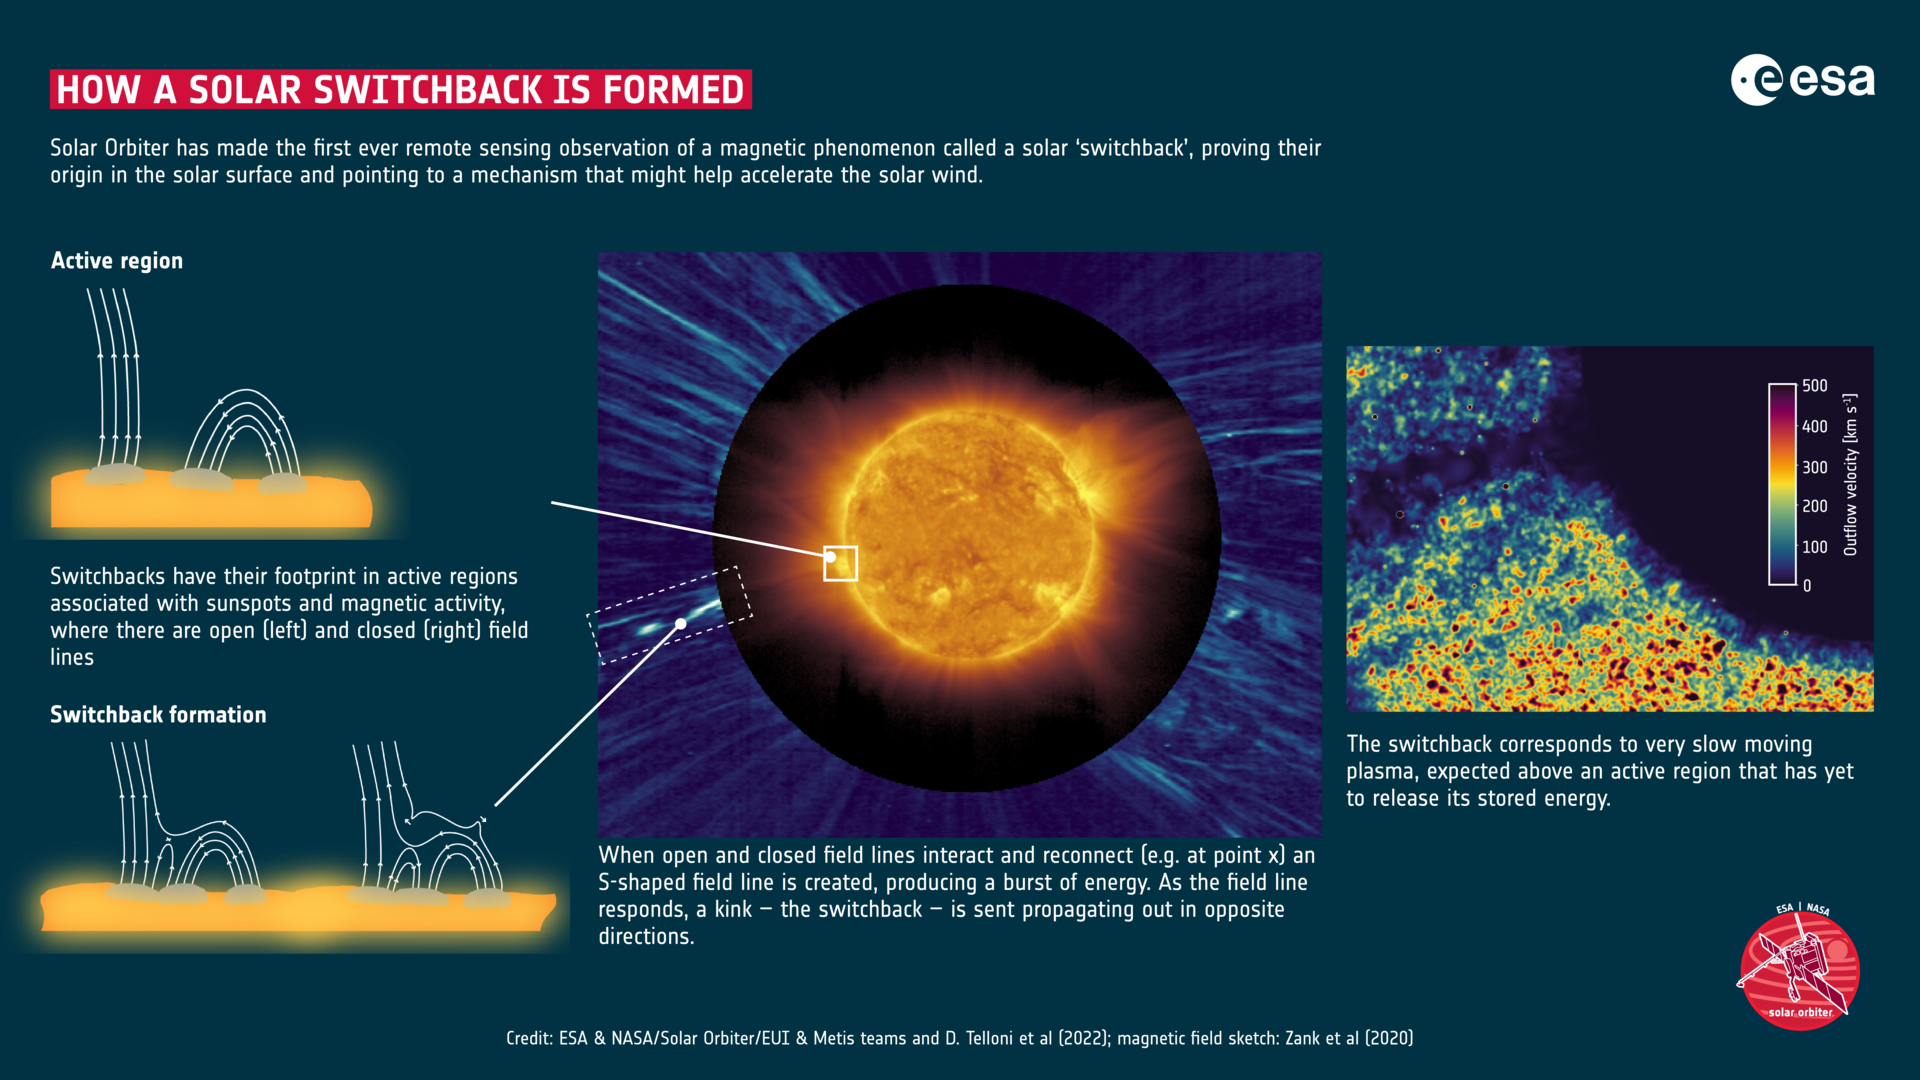 Иллюстрация, показывающая, как формируется солнечный переключатель. Авторы и права: ESA & NASA/Solar Orbiter/EUI & Metis Teams и D. Telloni et al. (2022 г.); Занк и др. (2020).